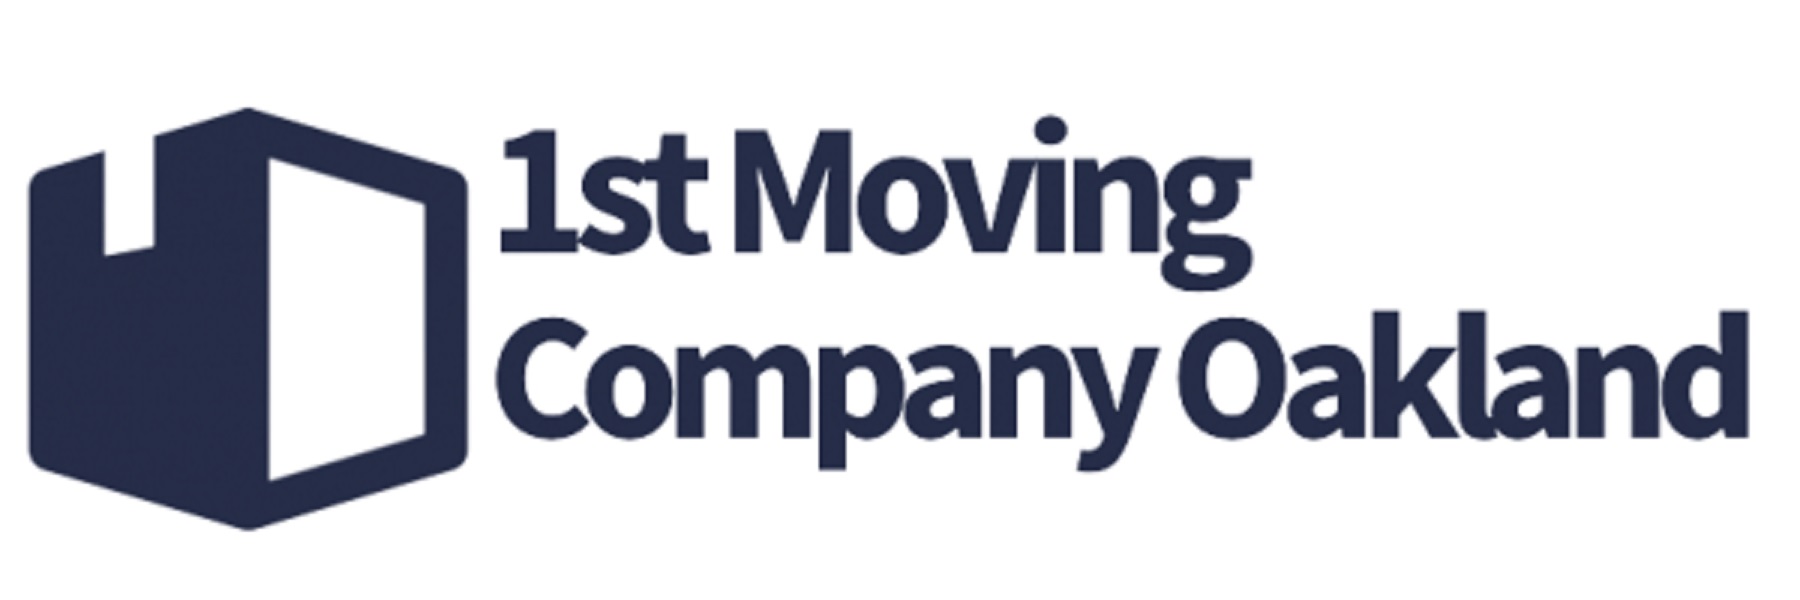 1st Moving Company Oakland's Logo